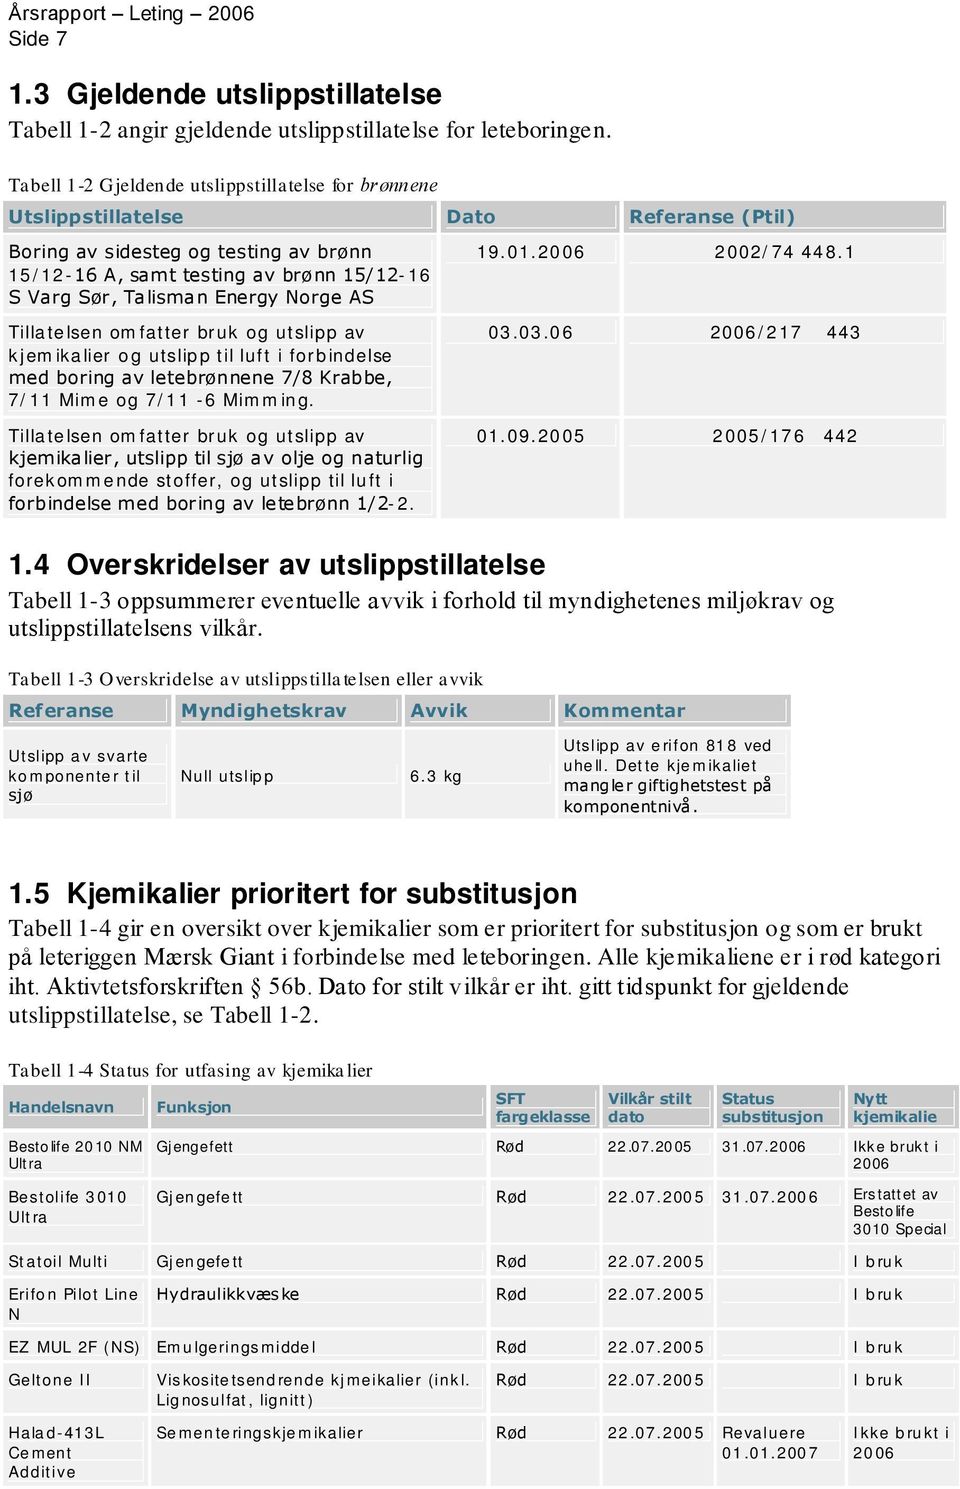 Norge AS Tillatelsen omfatter bruk og utslipp av kjemikalier og utslipp til luft i forbindelse med boring av letebrønnene 7/8 Krabbe, 7/11 Mime og 7/11-6 Mimming. 19.1.26 22/74 448.1 3.